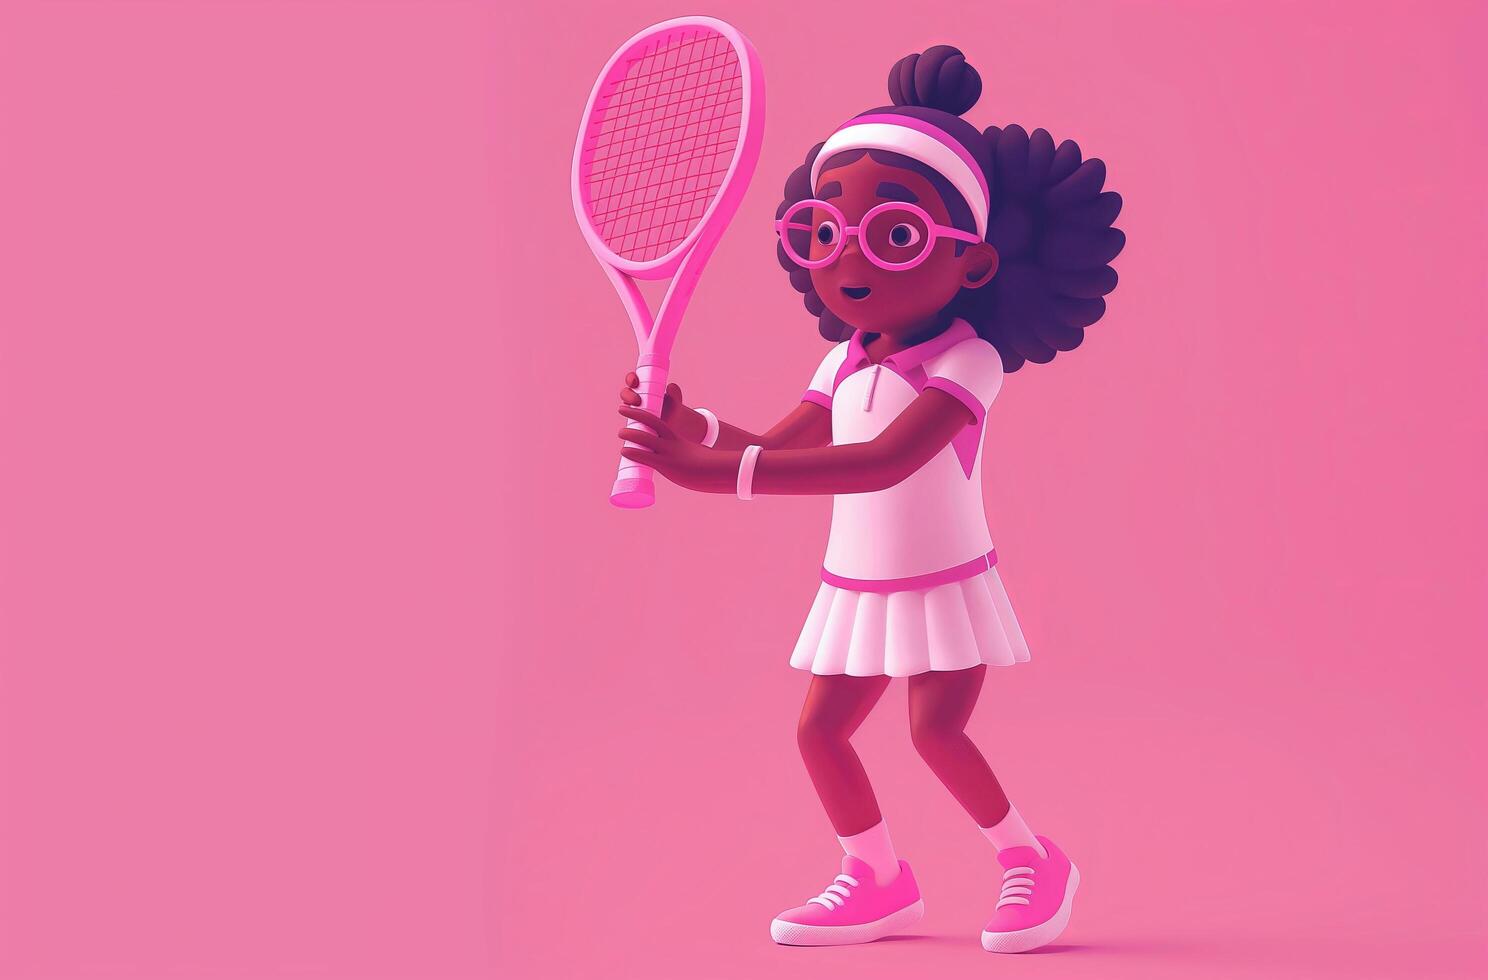 Animé tennis joueur enfant photo